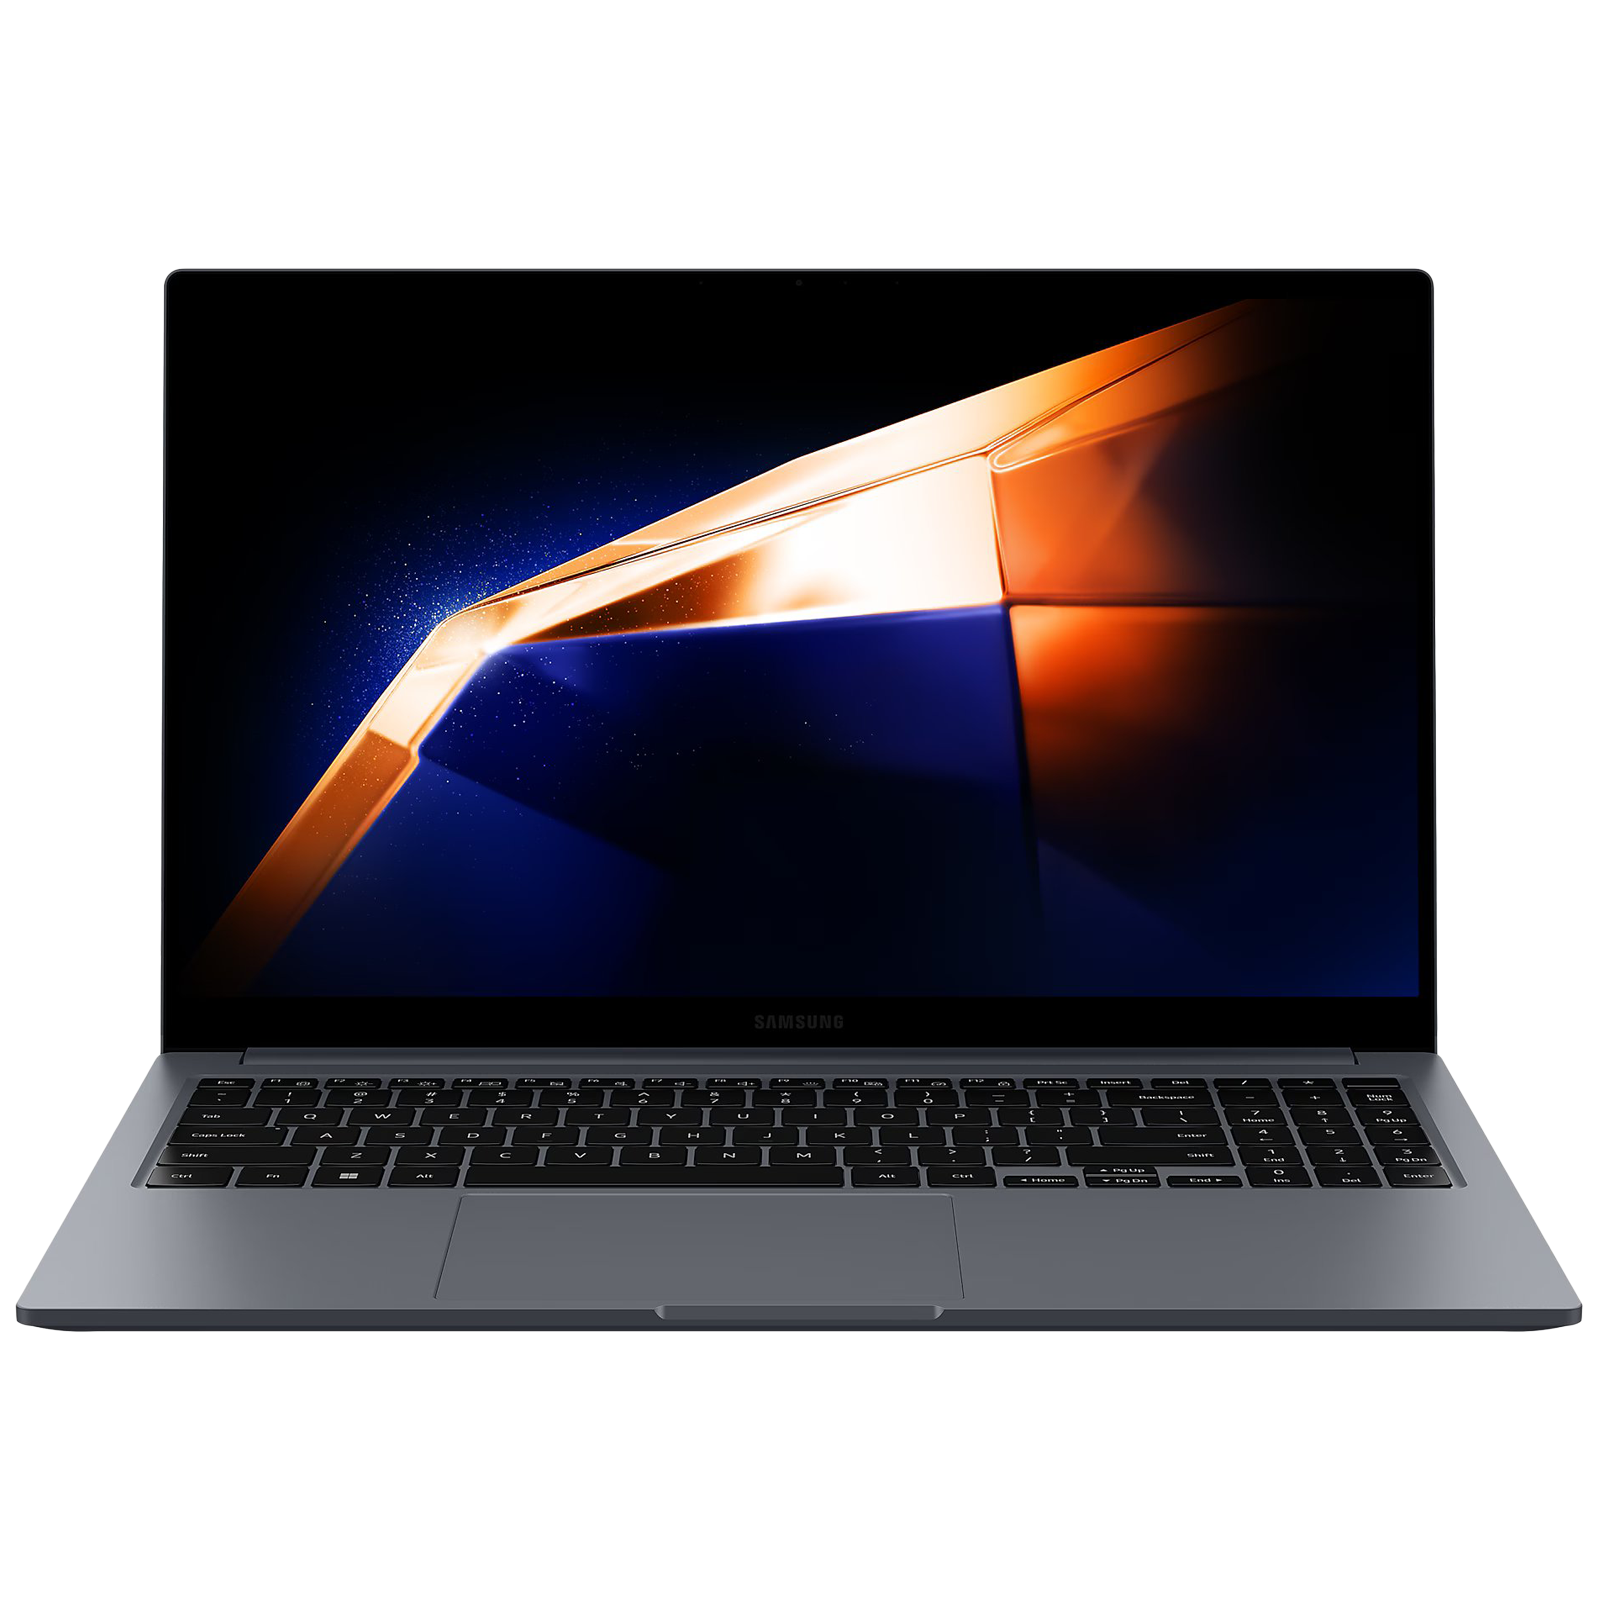 

SAMSUNG Galaxy Book4 Intel Core i5 13th Gen Laptop (16GB, 512GB SSD, Windows 11 Home, 15.6 inch Full HD LED Display, Grey, 1.55 KG)